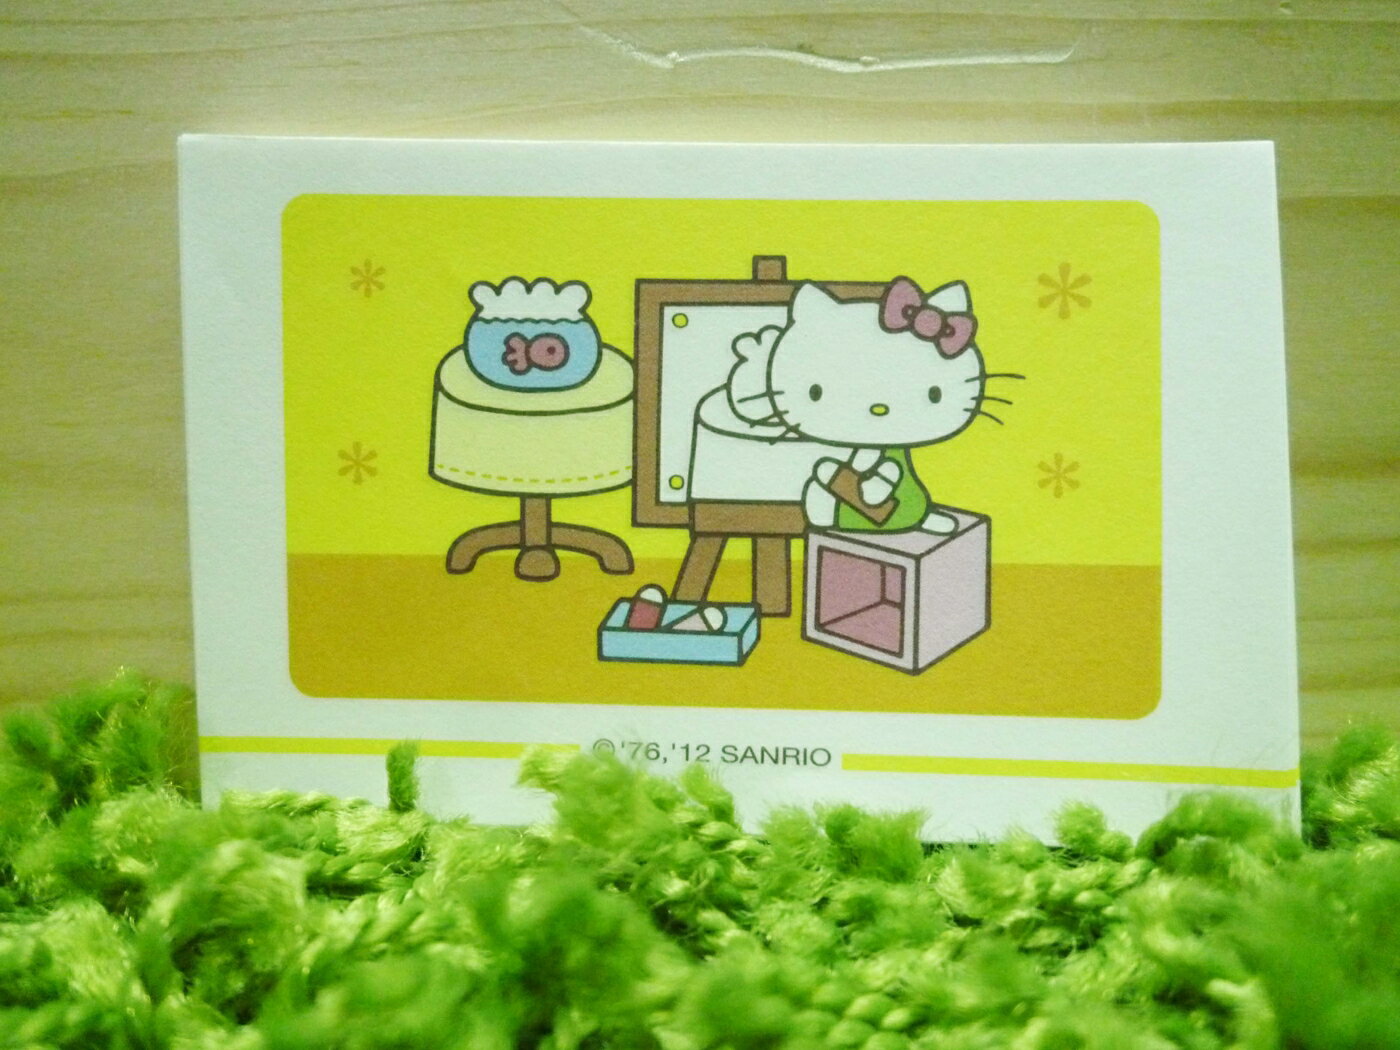 【震撼精品百貨】Hello Kitty 凱蒂貓 便條 金魚【共1款】 震撼日式精品百貨